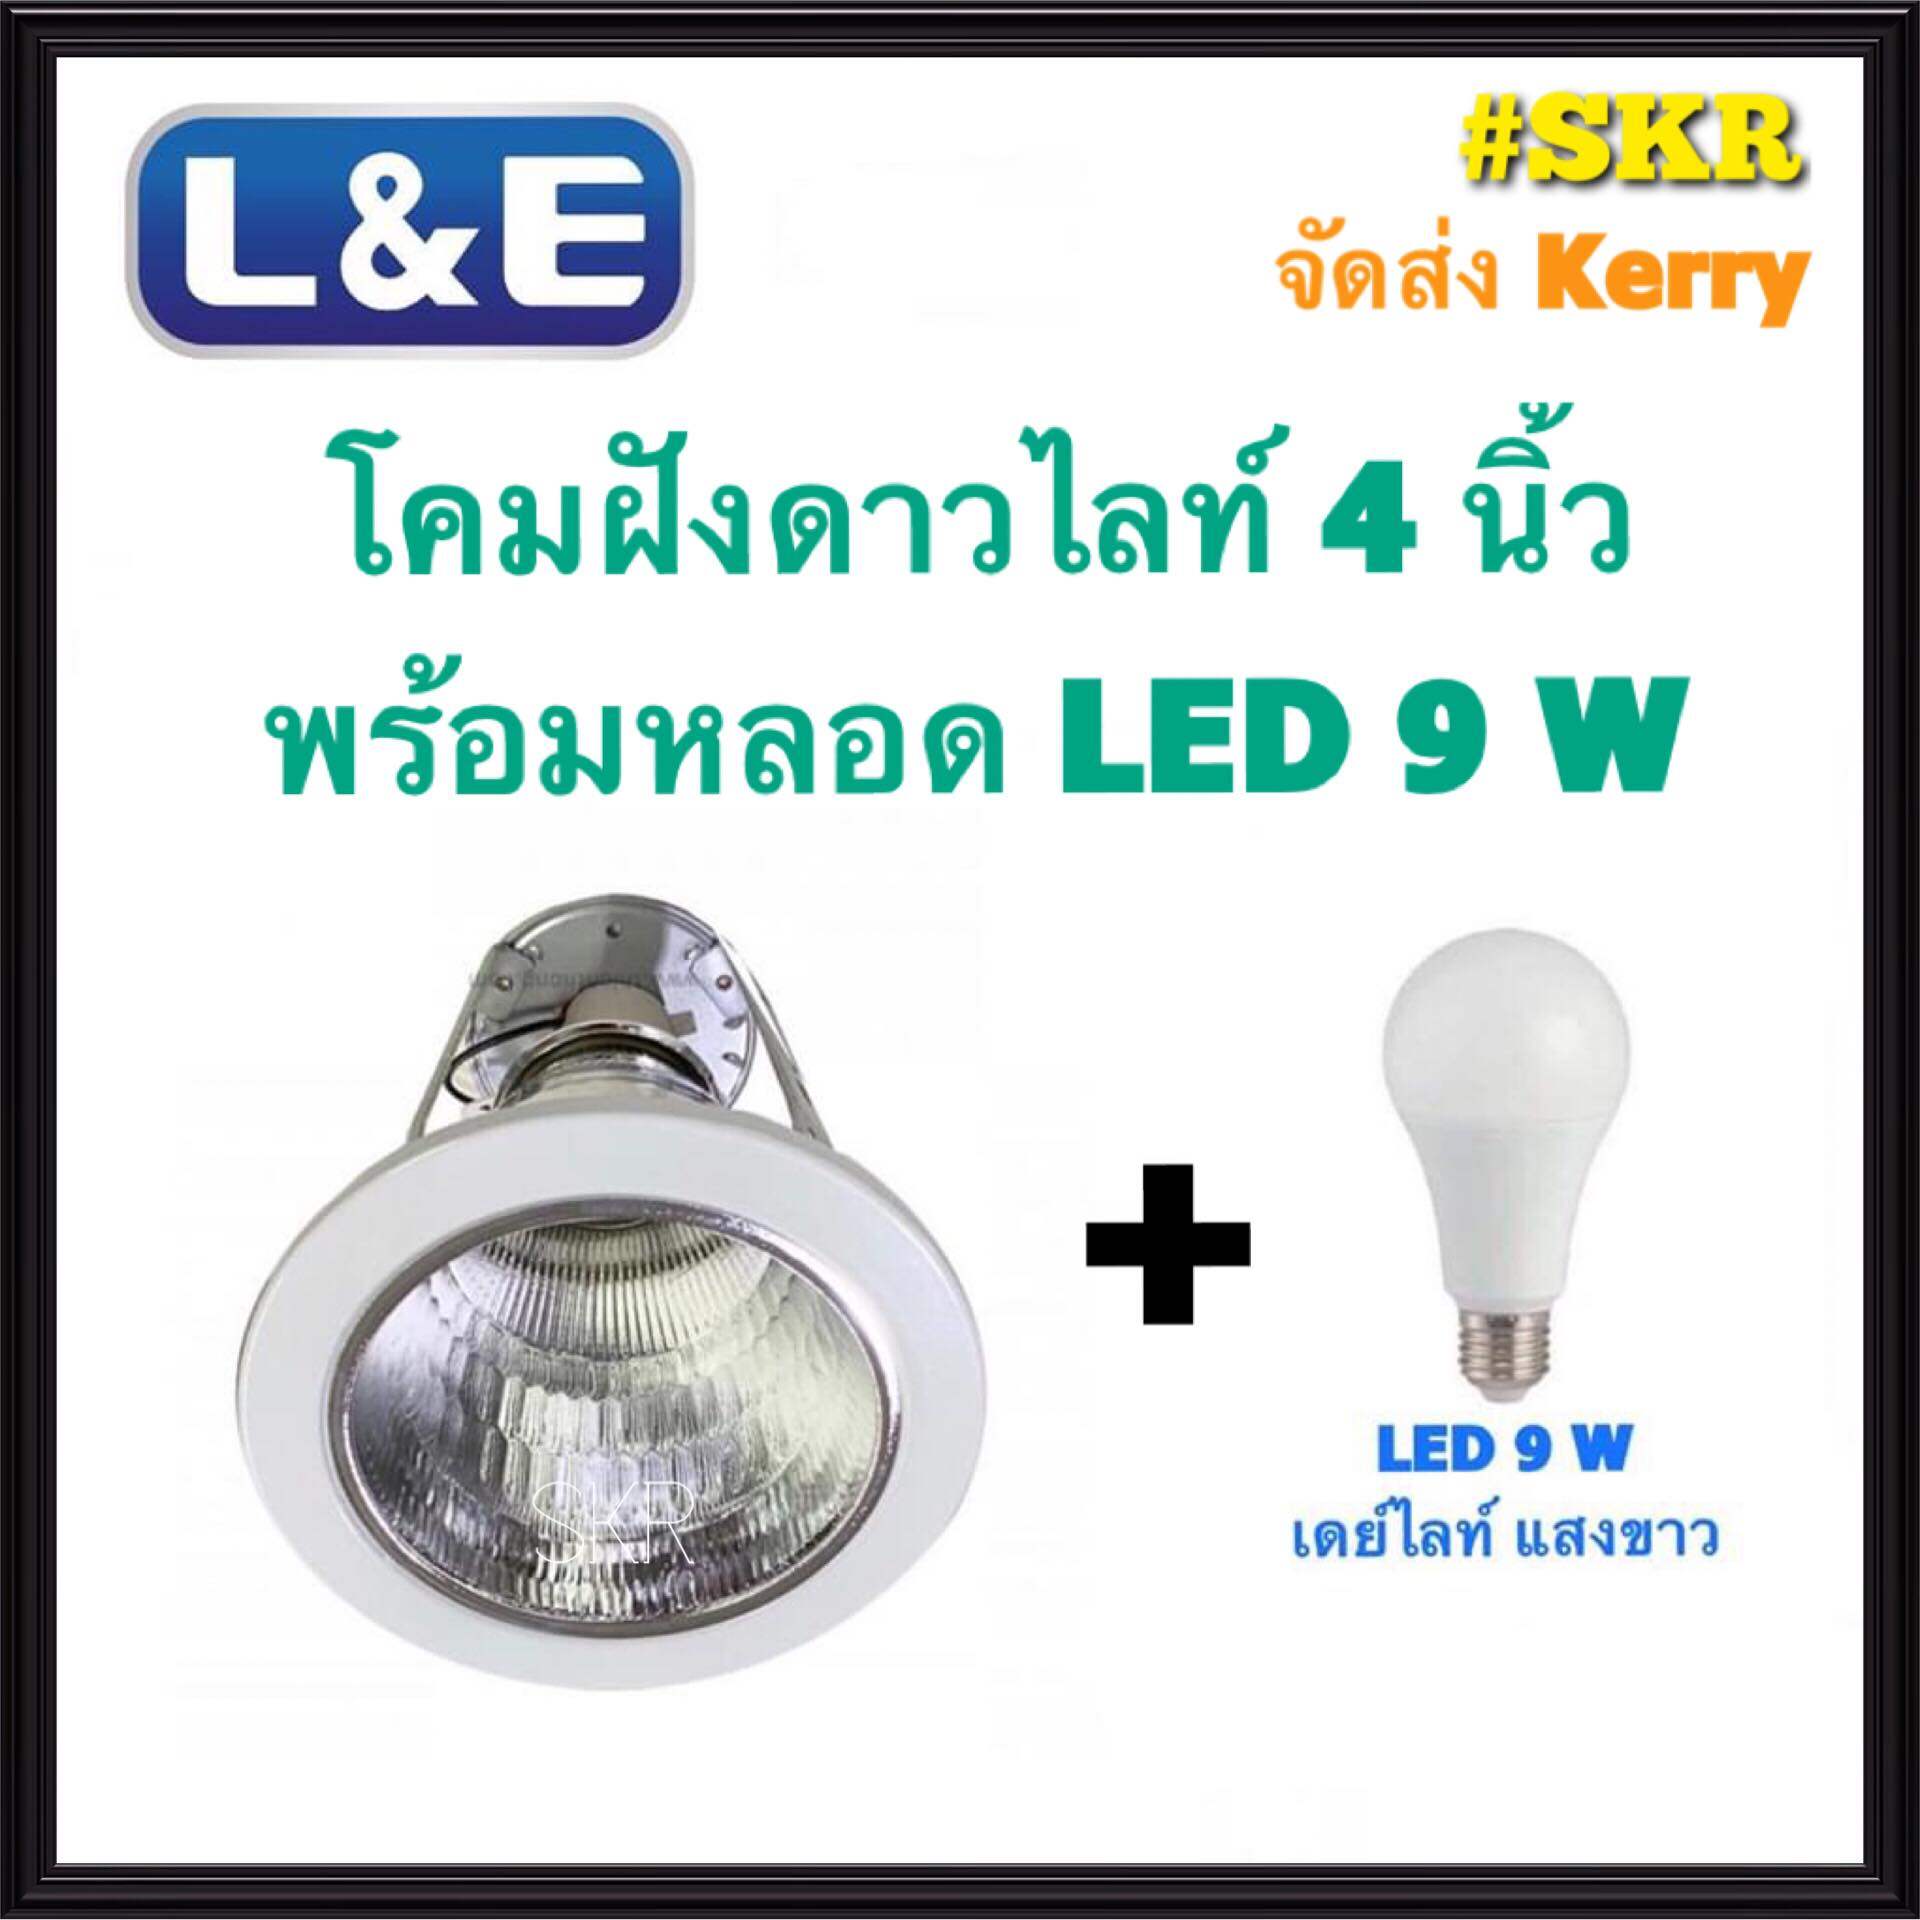 L&E โคมไฟฝังฝ้า 4นิ้ว พร้อมหลอด LED 9W เดยไลท์ วอร์มไวท์ 3แสง ขอบขาว โคมดาวน์ไลท์ ดาวไลท์ โคมฝัง LED จัดส่งKerry